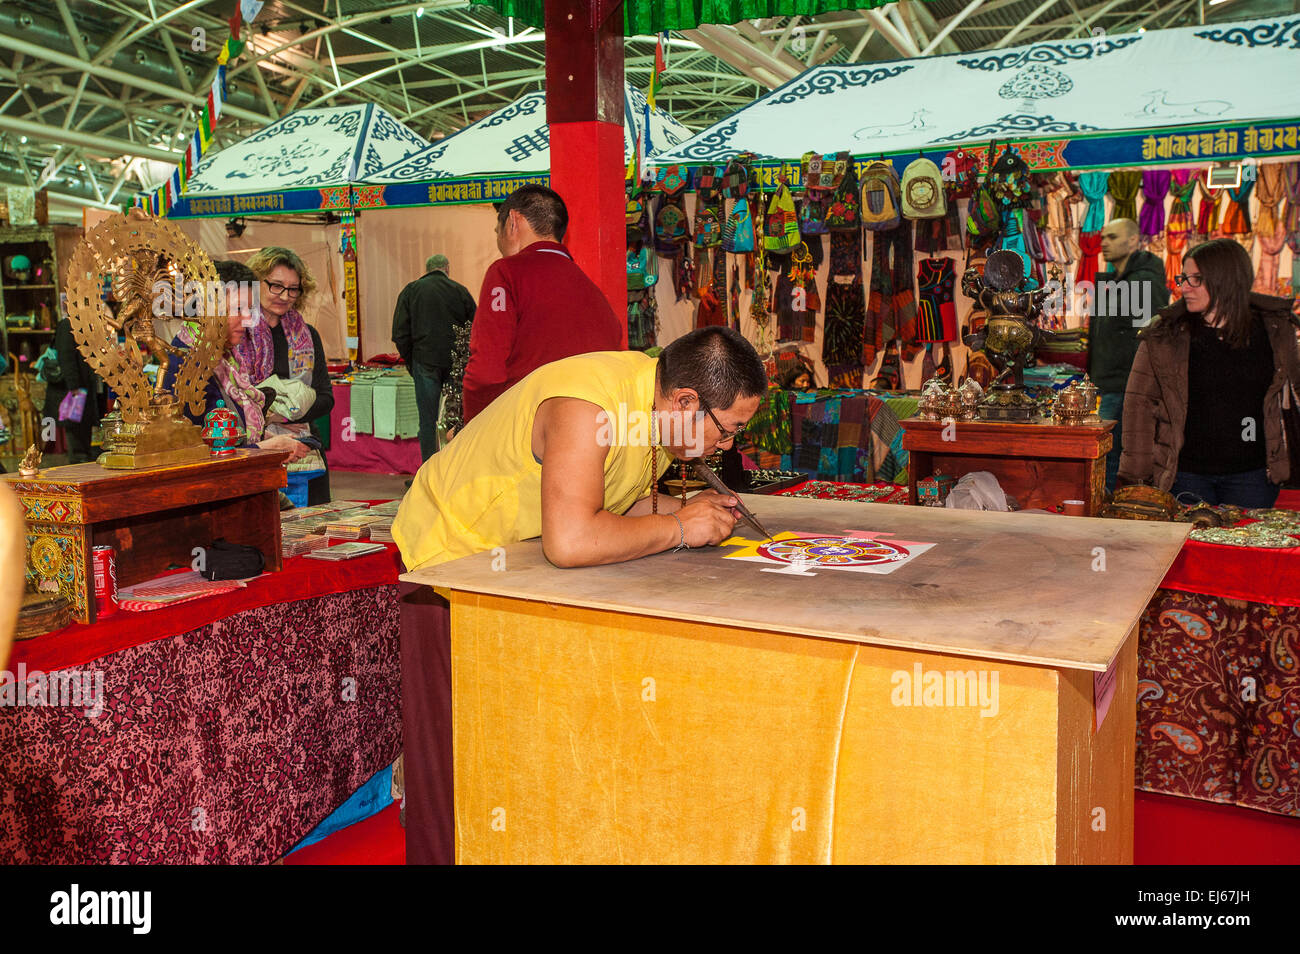 Turin, Italie. 22 mars, 2015. Le Lingotto fair 'Festival dell'Oriente' du 20 au 22 mars 2015 et du 27 au 30 mars 2015 - 20 mars 2015 - Crédit : mandala tibétain Realy Easy Star/Alamy Live News Banque D'Images